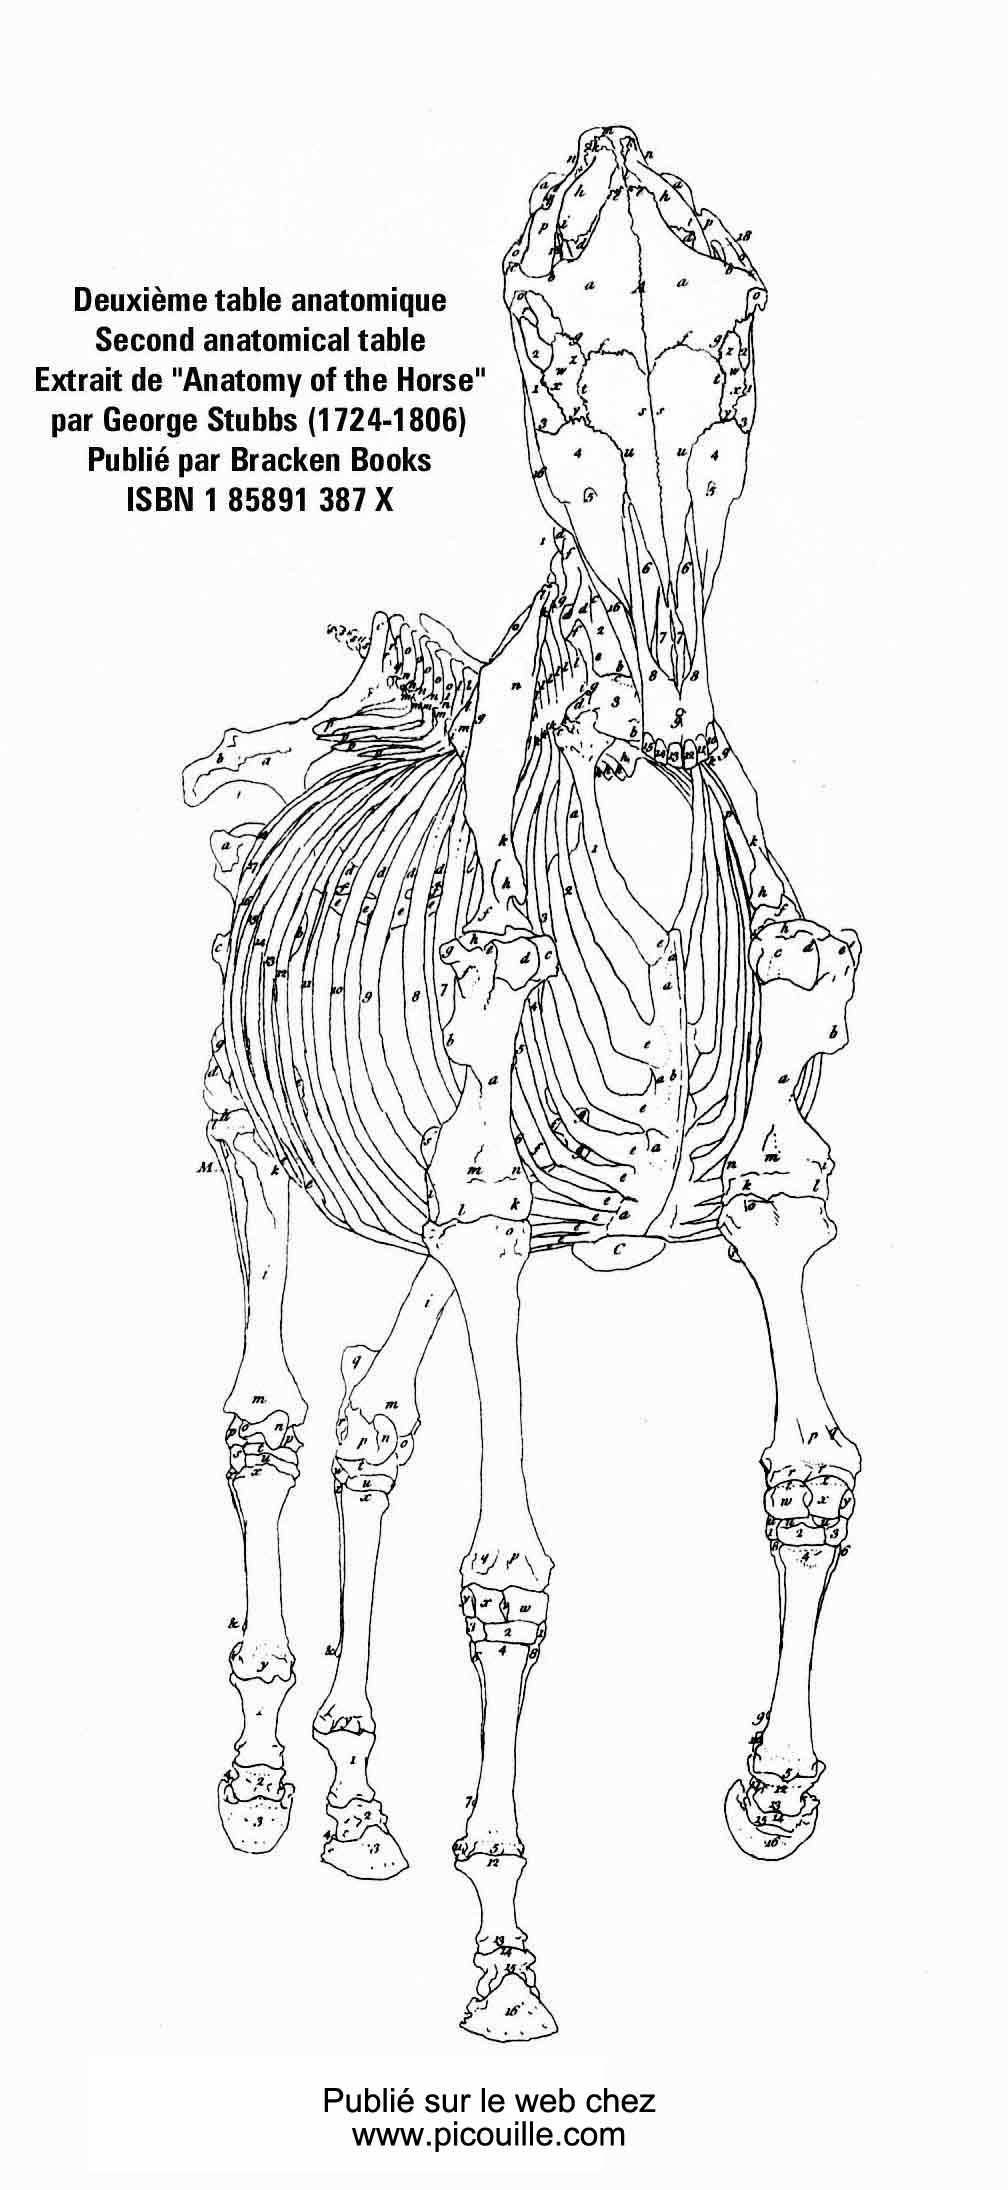 Version géante de la deuxième table anatomique de Geroge Stubbs.